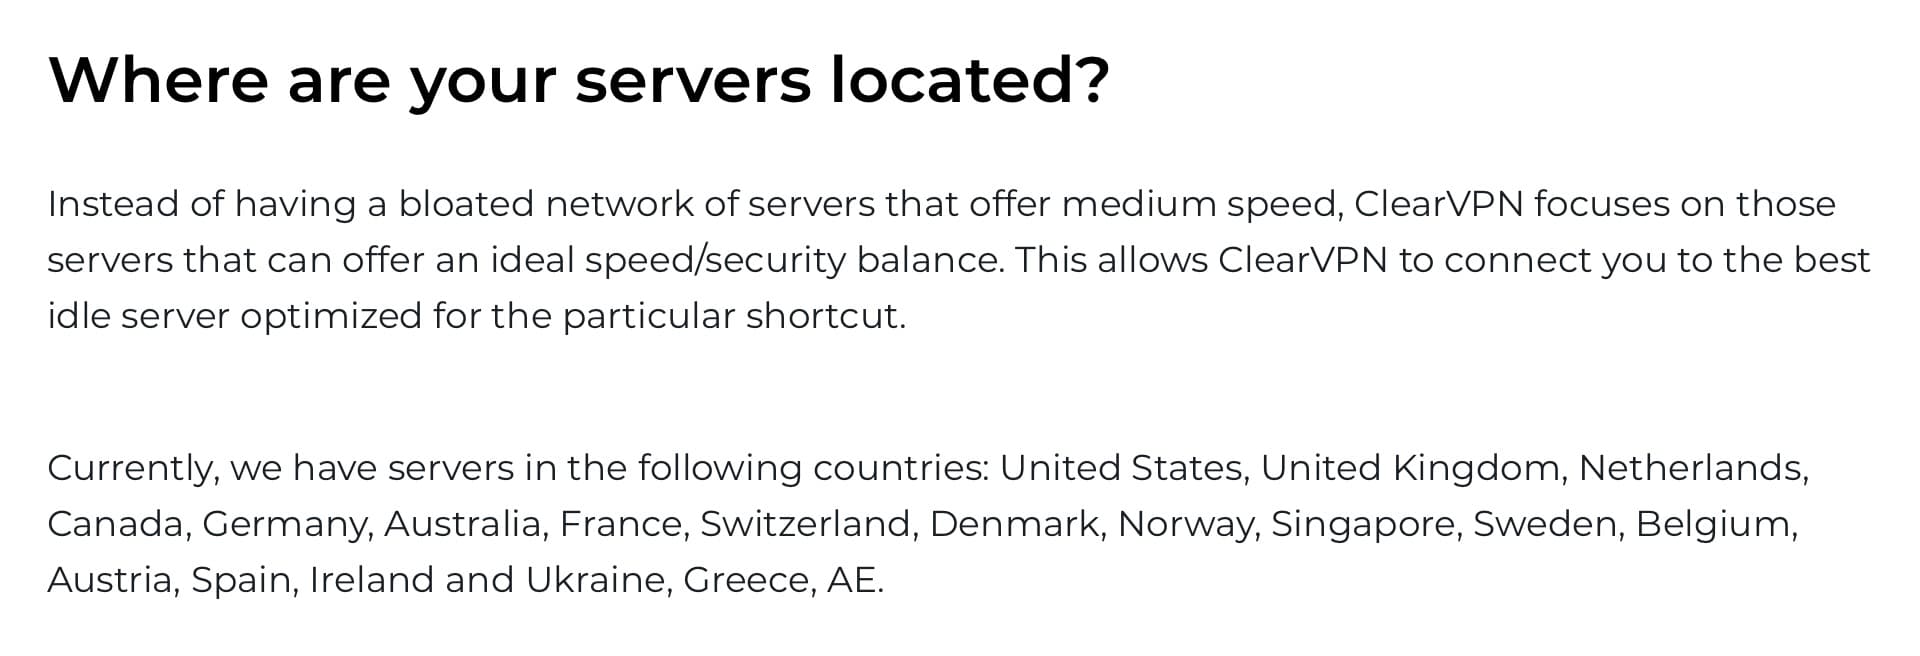 ClearVPN - Servers